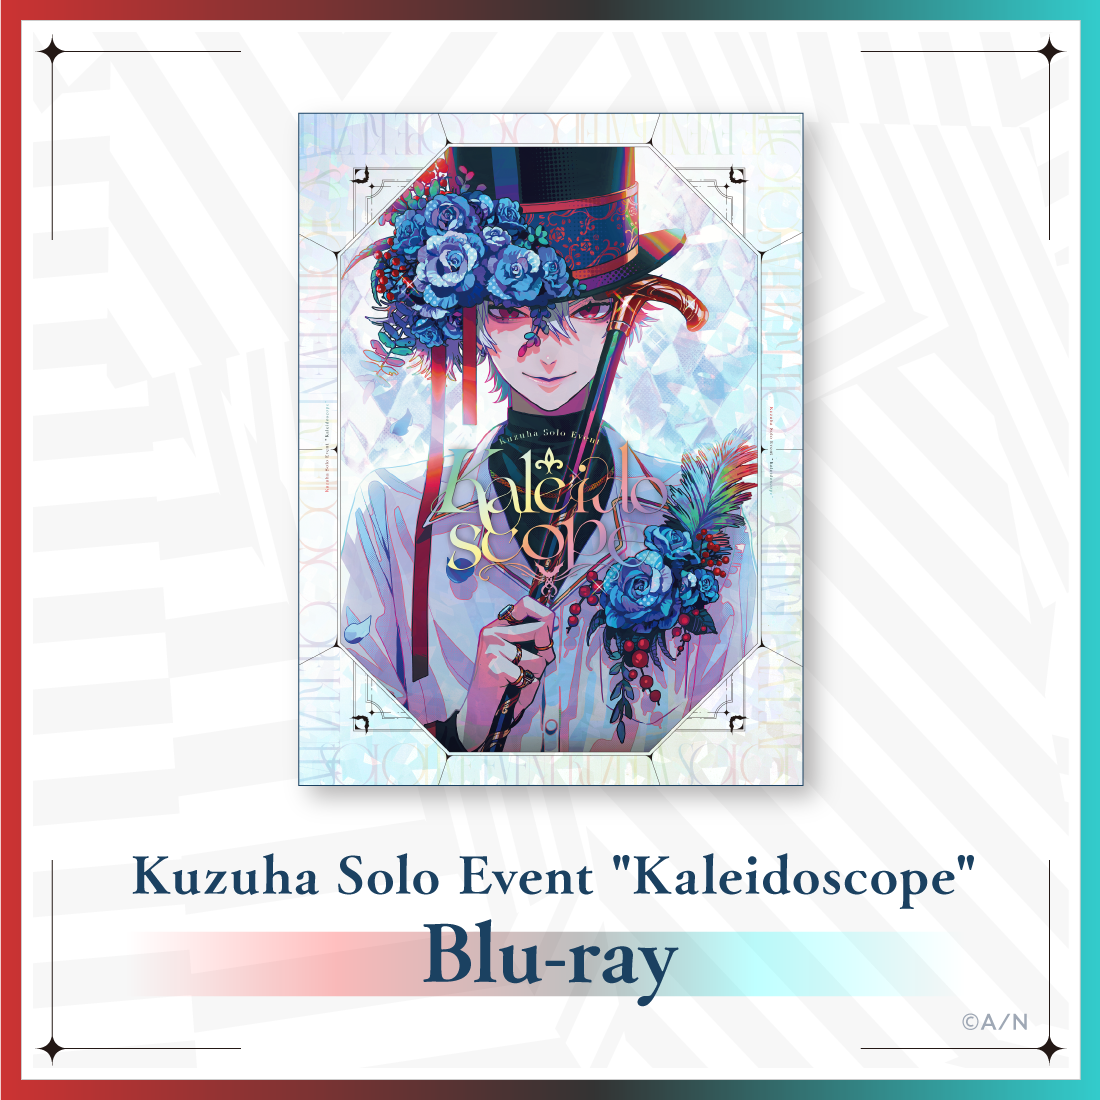 Kuzuha Solo Event "Kaleidoscope" [Blu-ray] ライバー 関連タグ 商品を選択